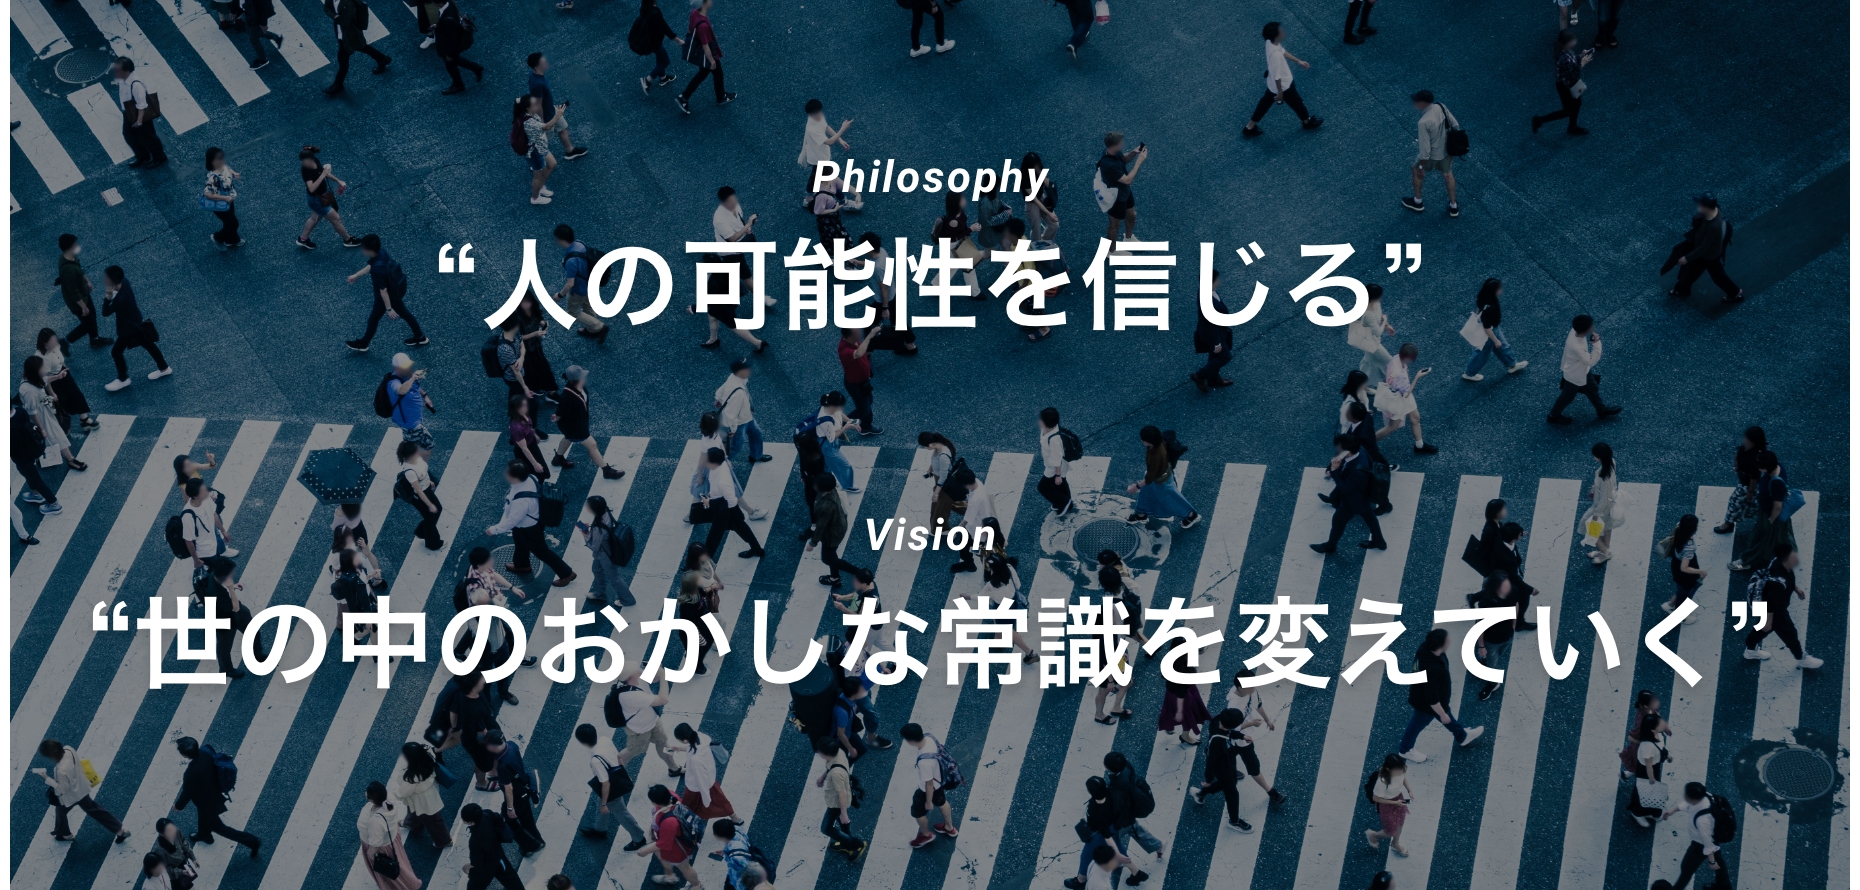 Philosophy:“人の可能性を信じる” Vision:“世の中のおかしな常識を変えていく”